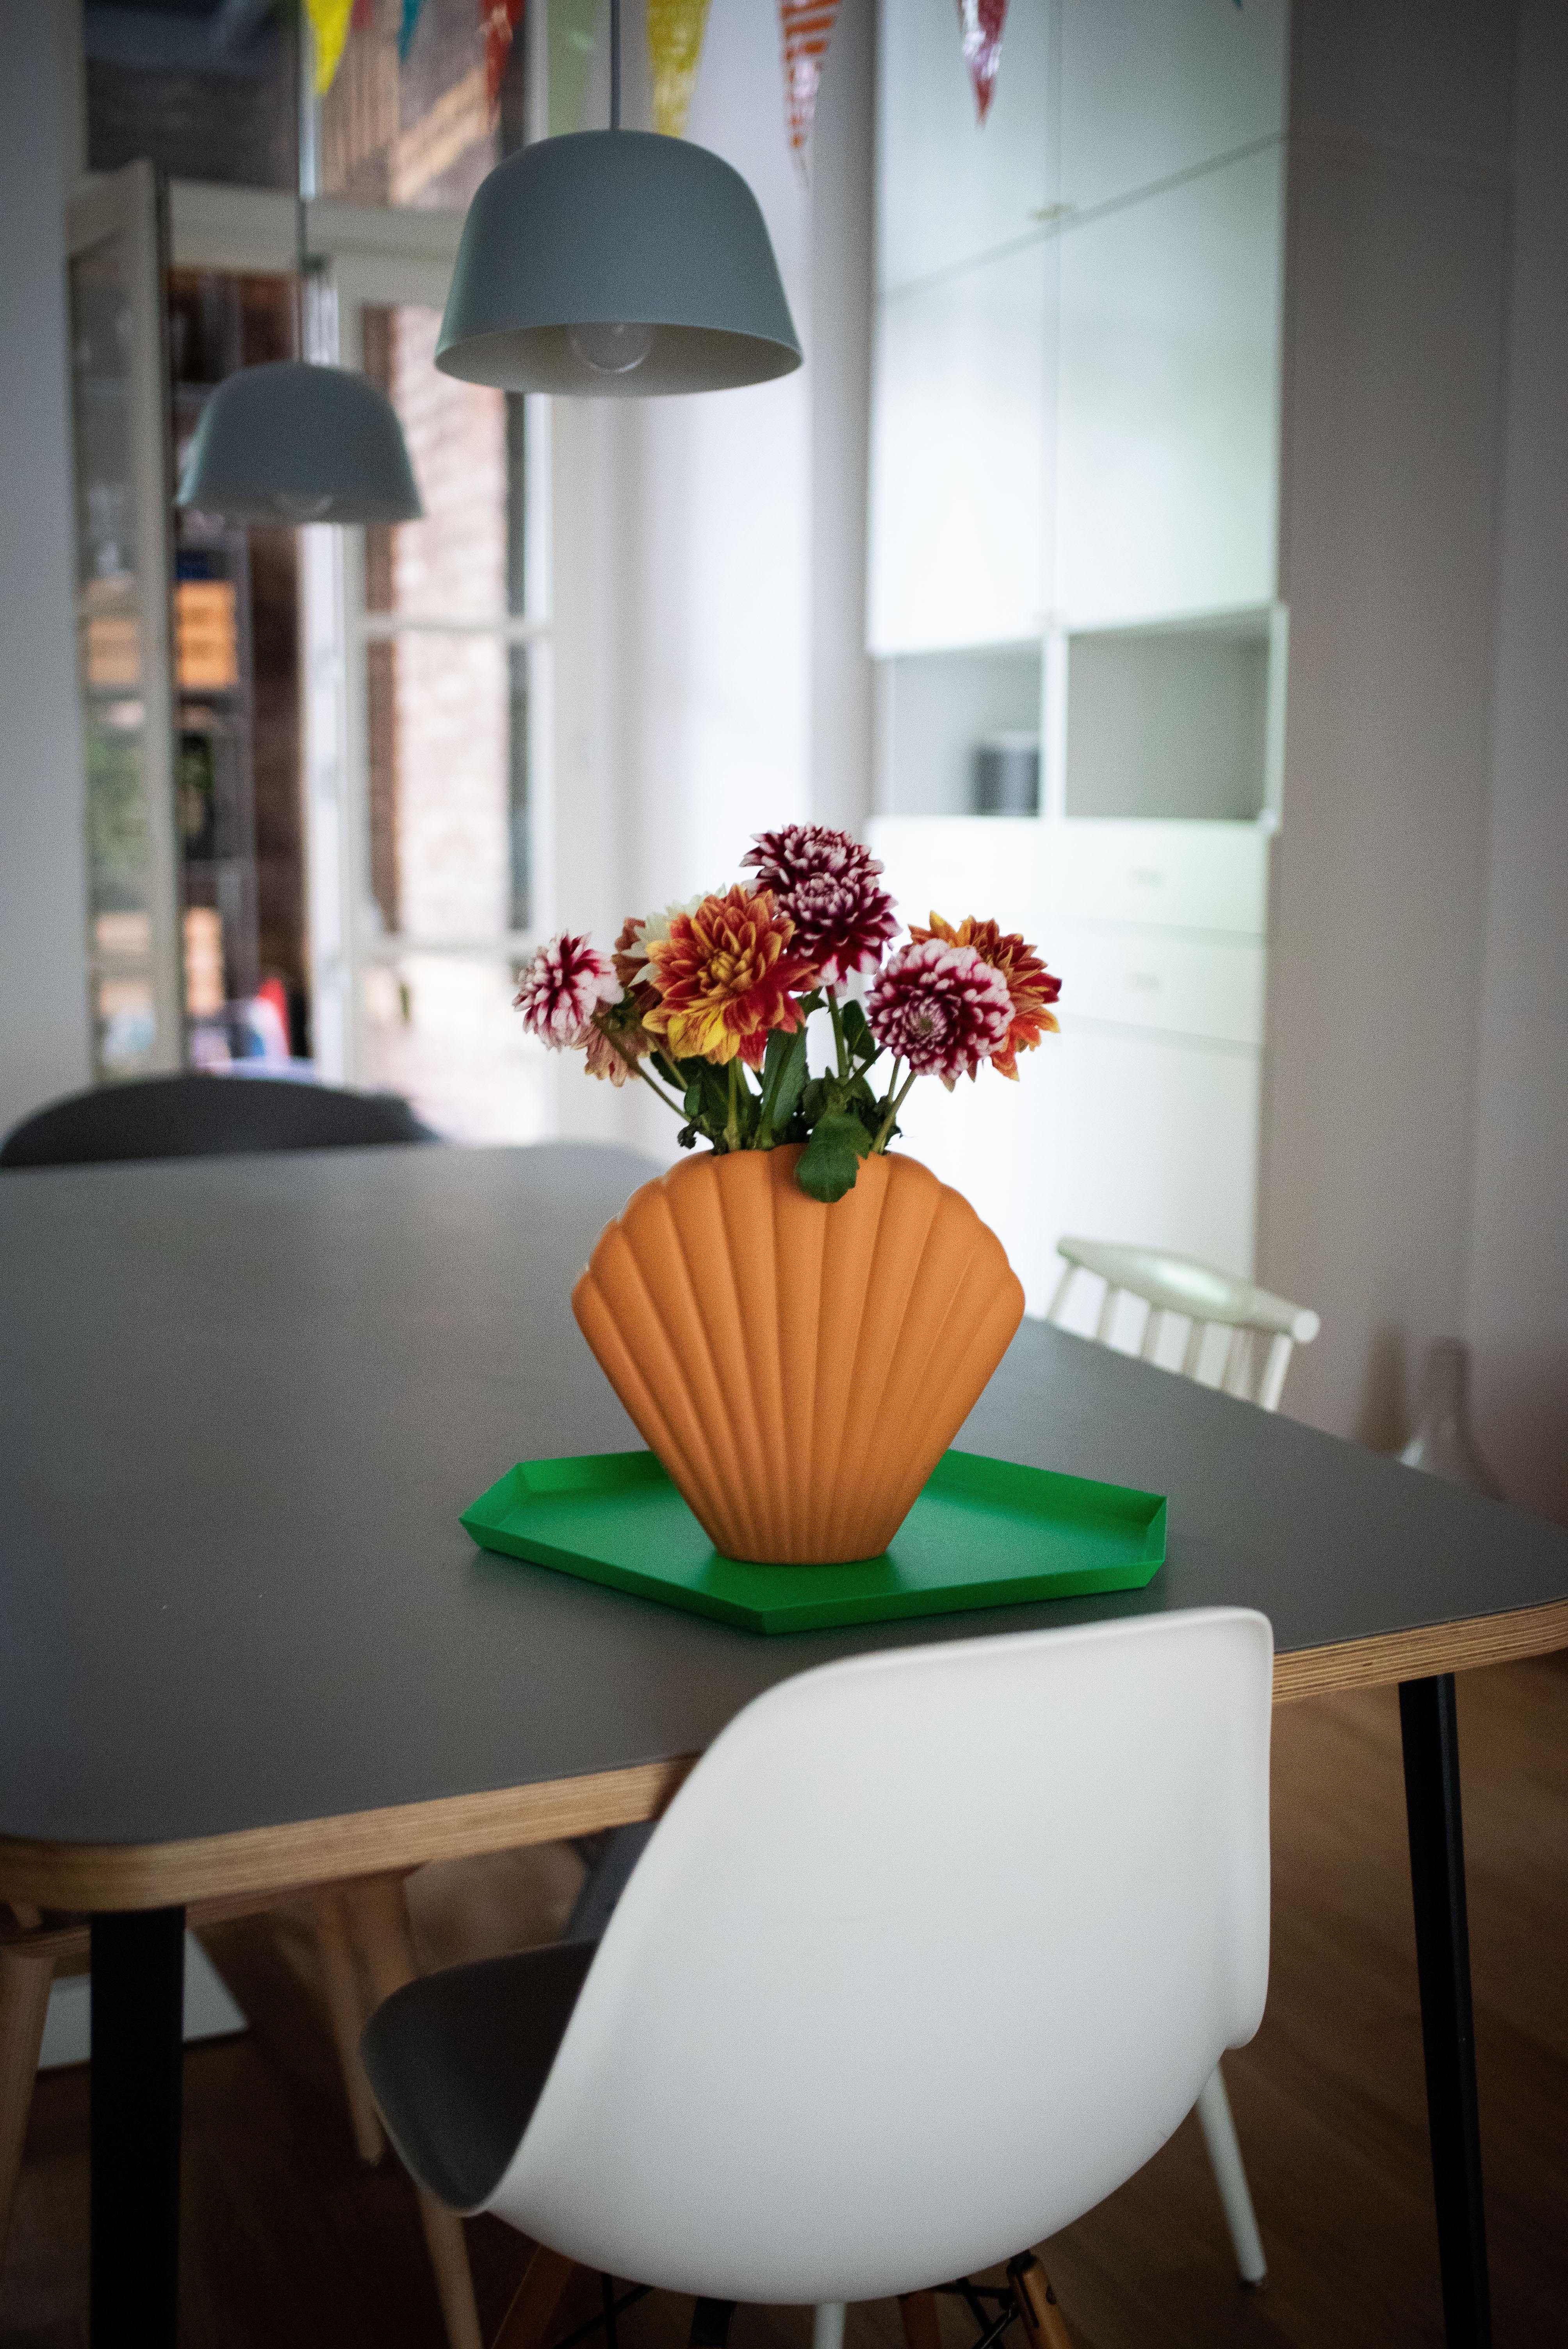 Freitagsblumen - habts schön #flowers #fridaymood #küche #esstisch #decoinspiration #interiordesign